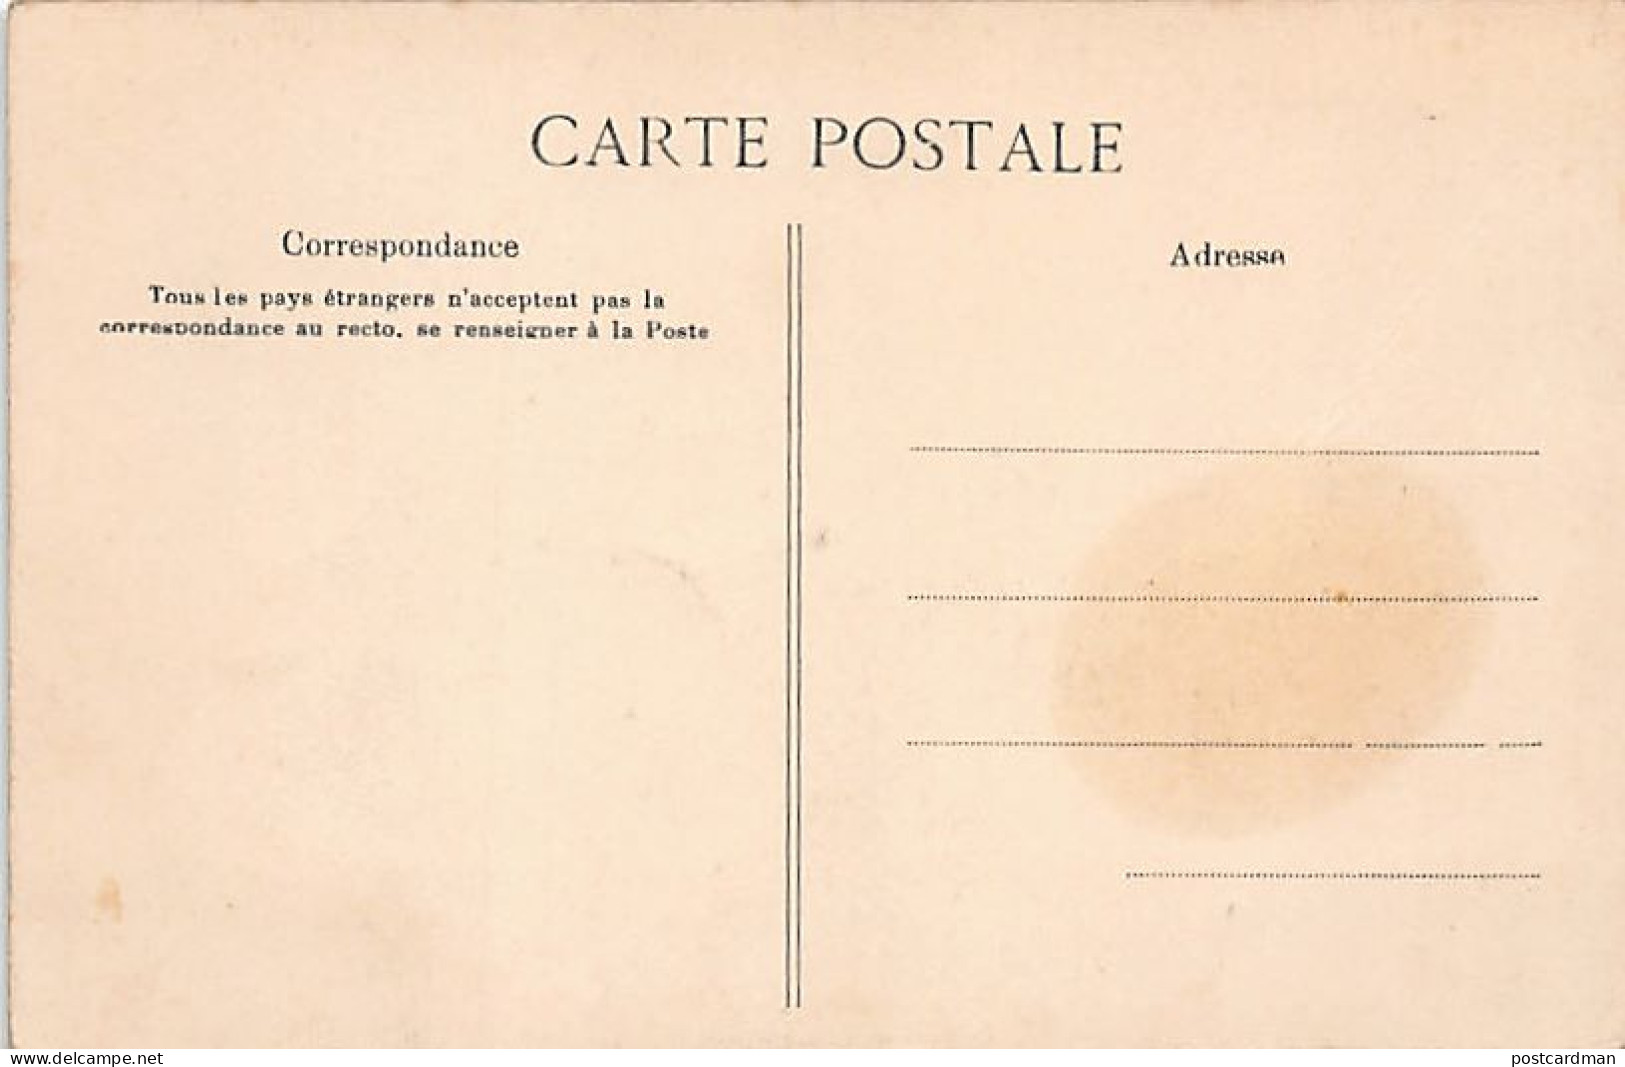 Algérie - Mauresques Prenant Le Café - Ed. Collection Idéale P.S. 161 - Femmes